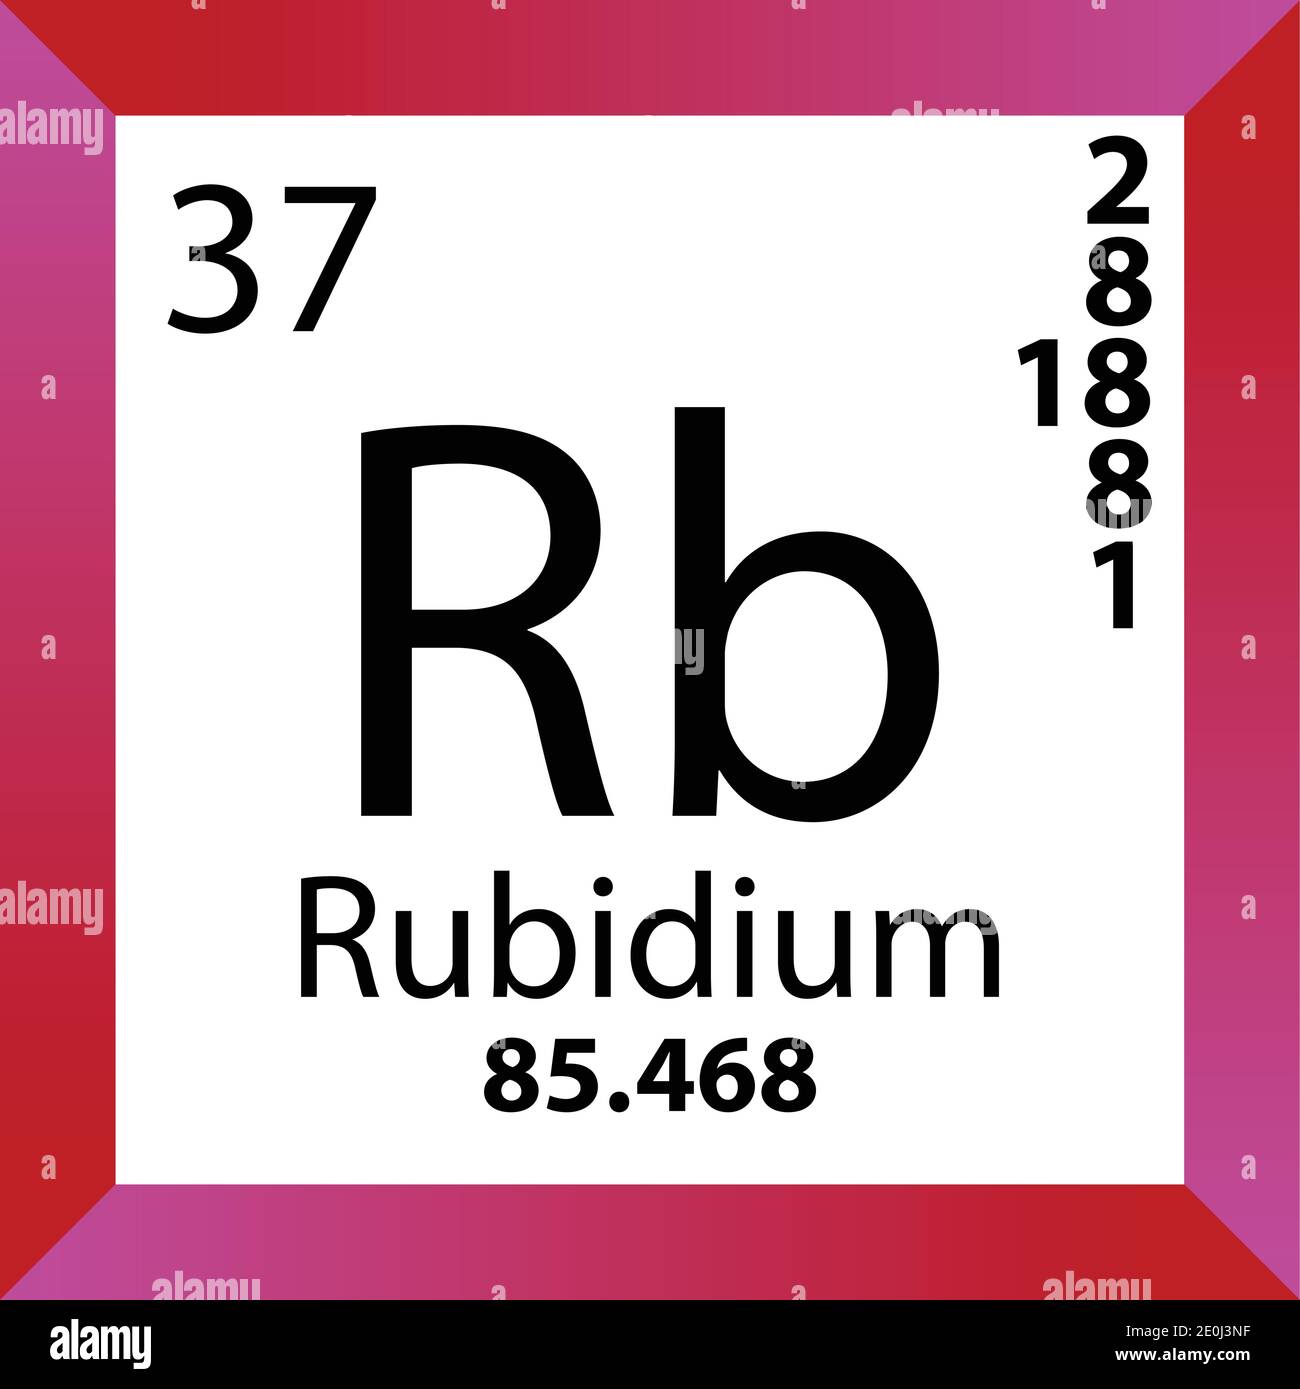 RB Rubidium Chemical Element Tavola periodica. Illustrazione a vettore singolo, icona colorata con massa molare, conn. Di elettroni e numero atomico. Illustrazione Vettoriale